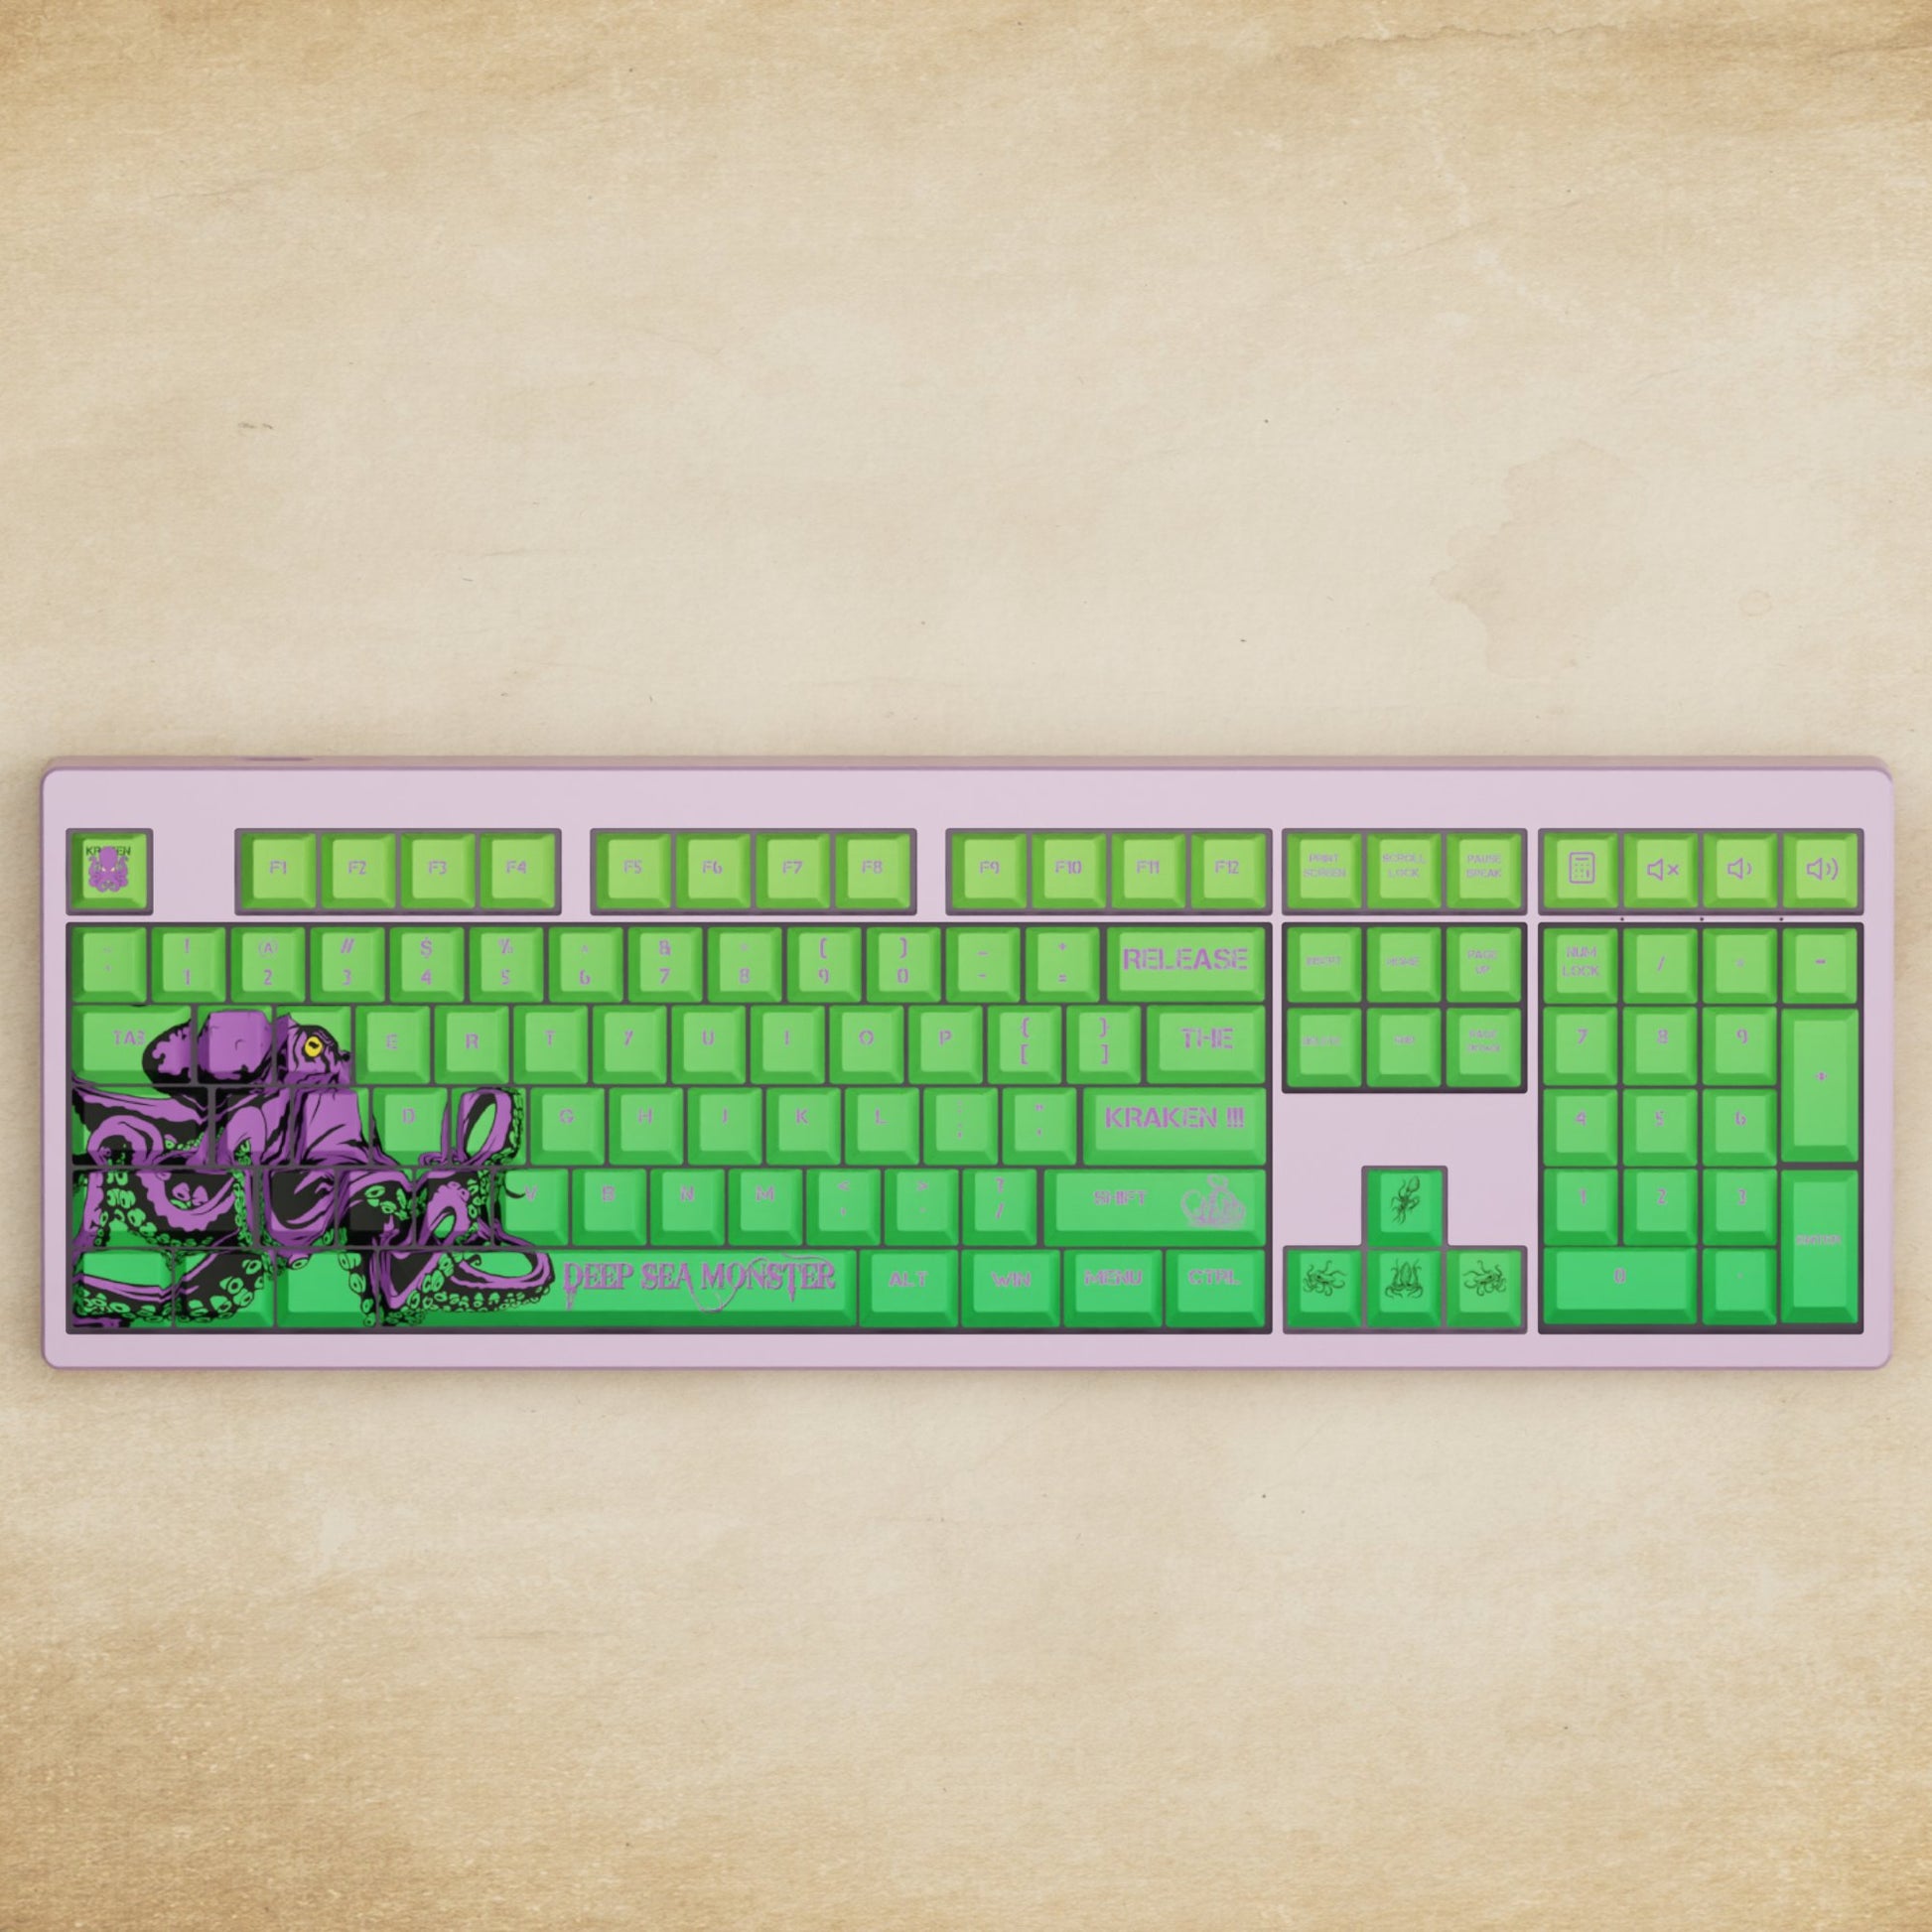 Monsgeek M5 - 100% Kraken Mechanical Keyboard - Goblintechkeys